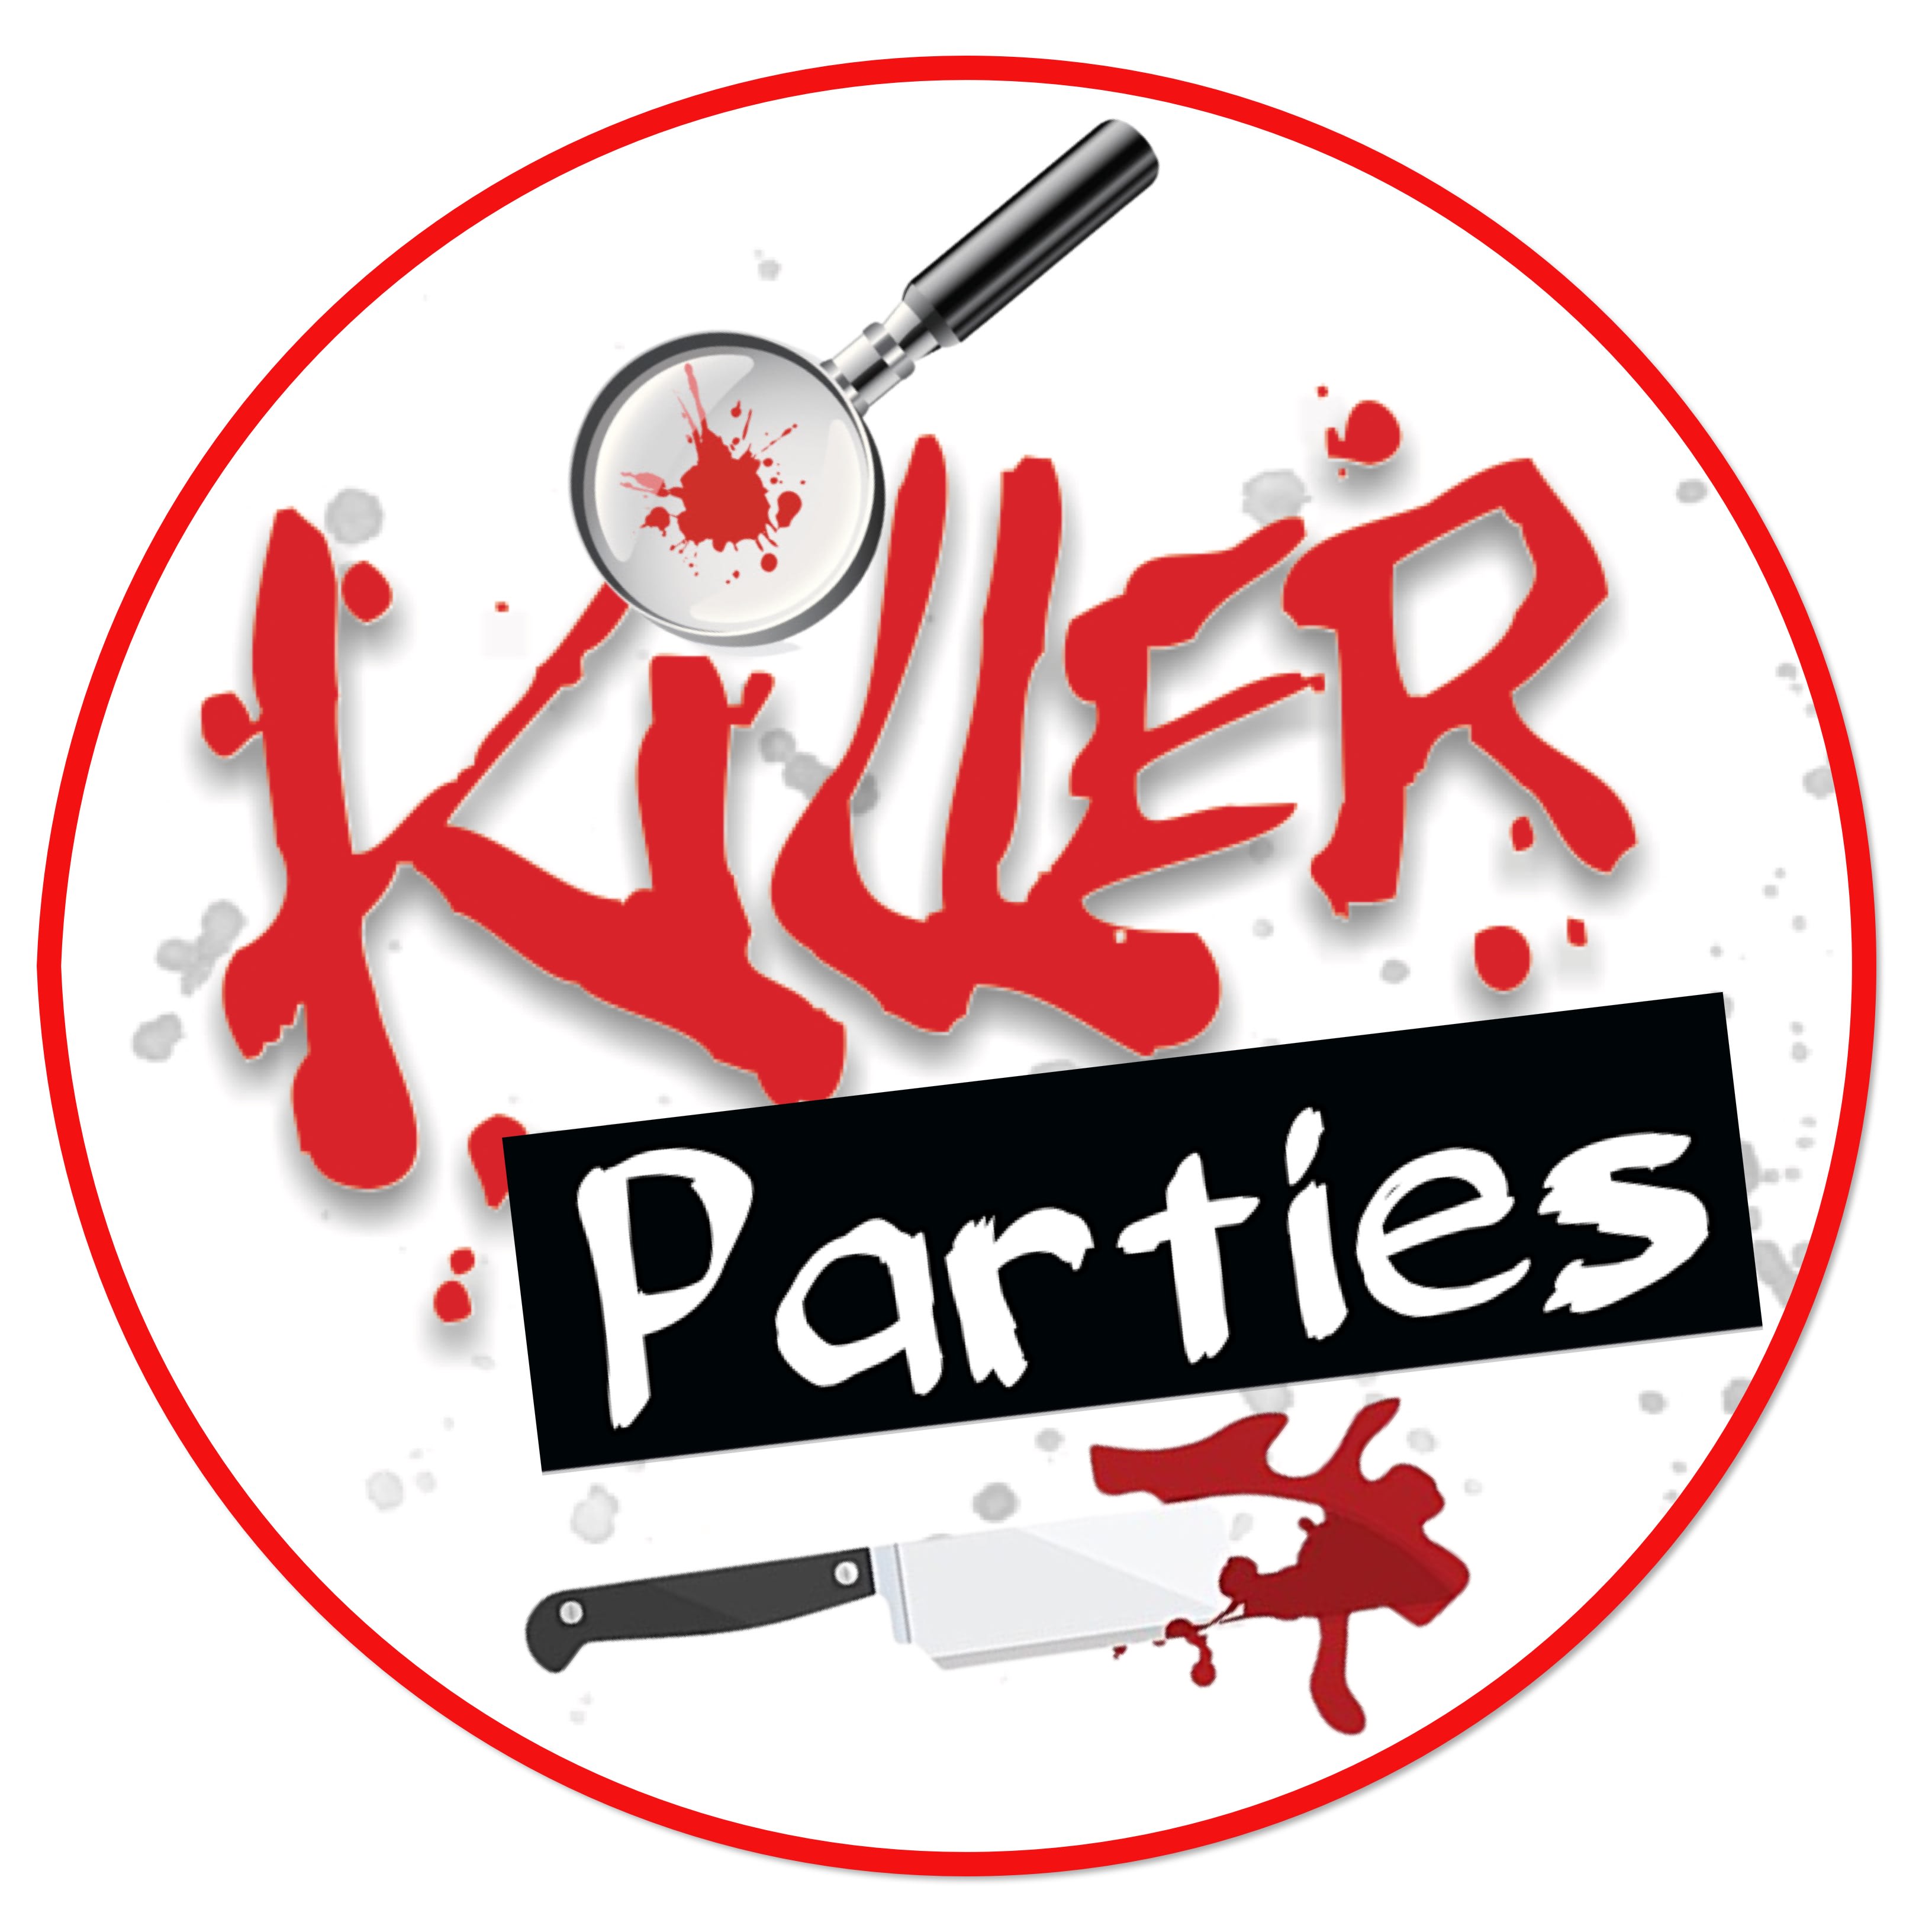 Killer Parties